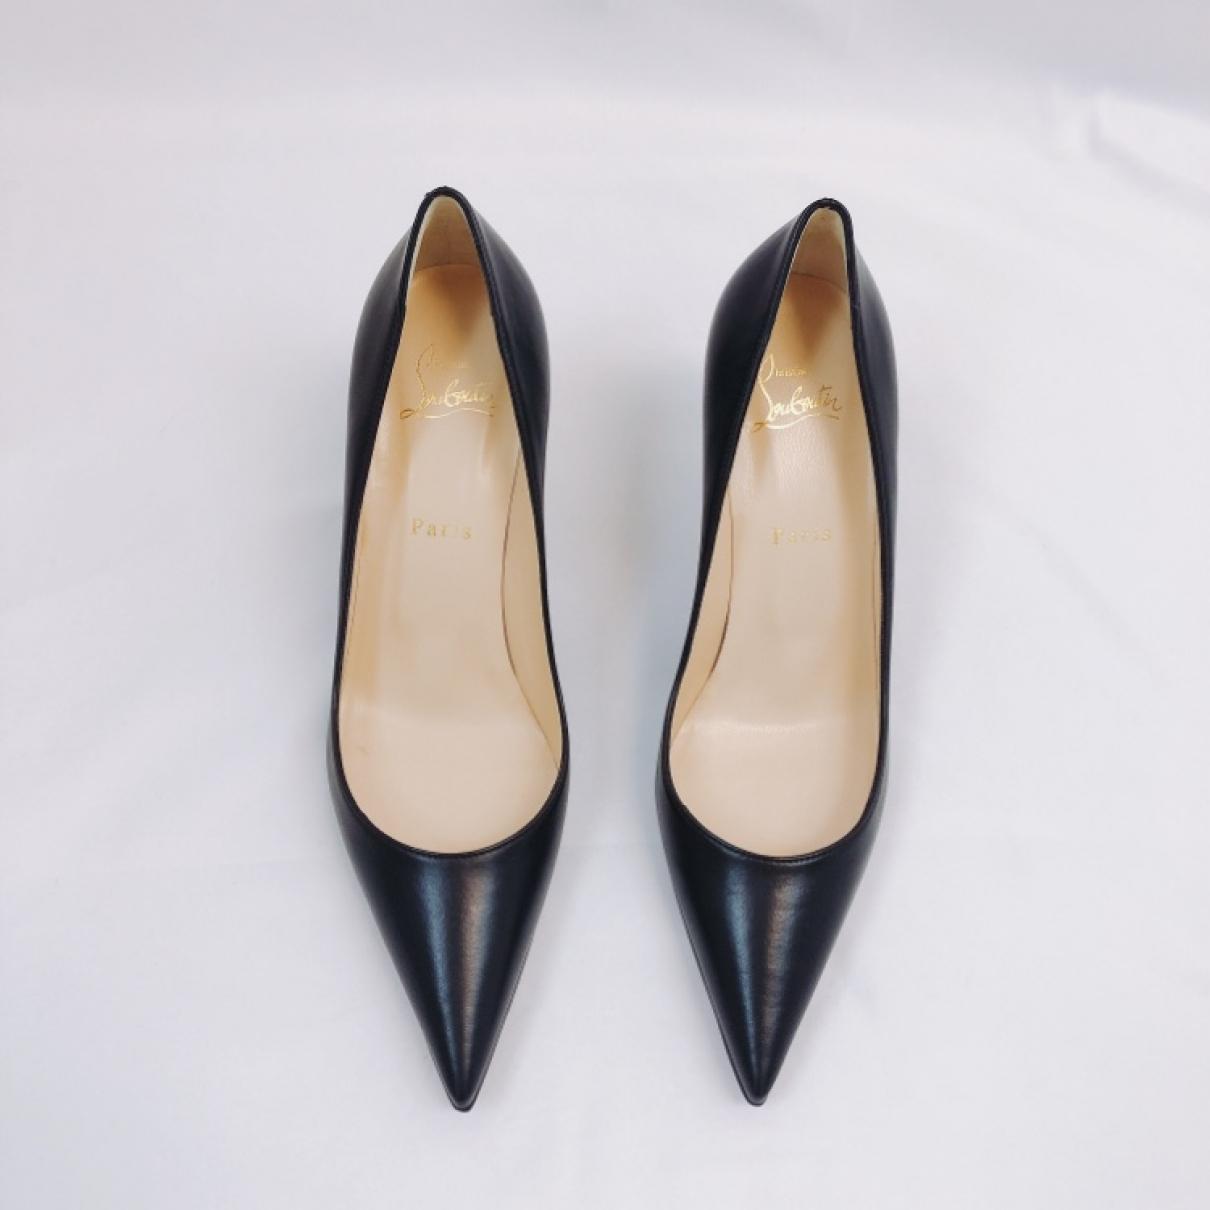 Leather heels - 4